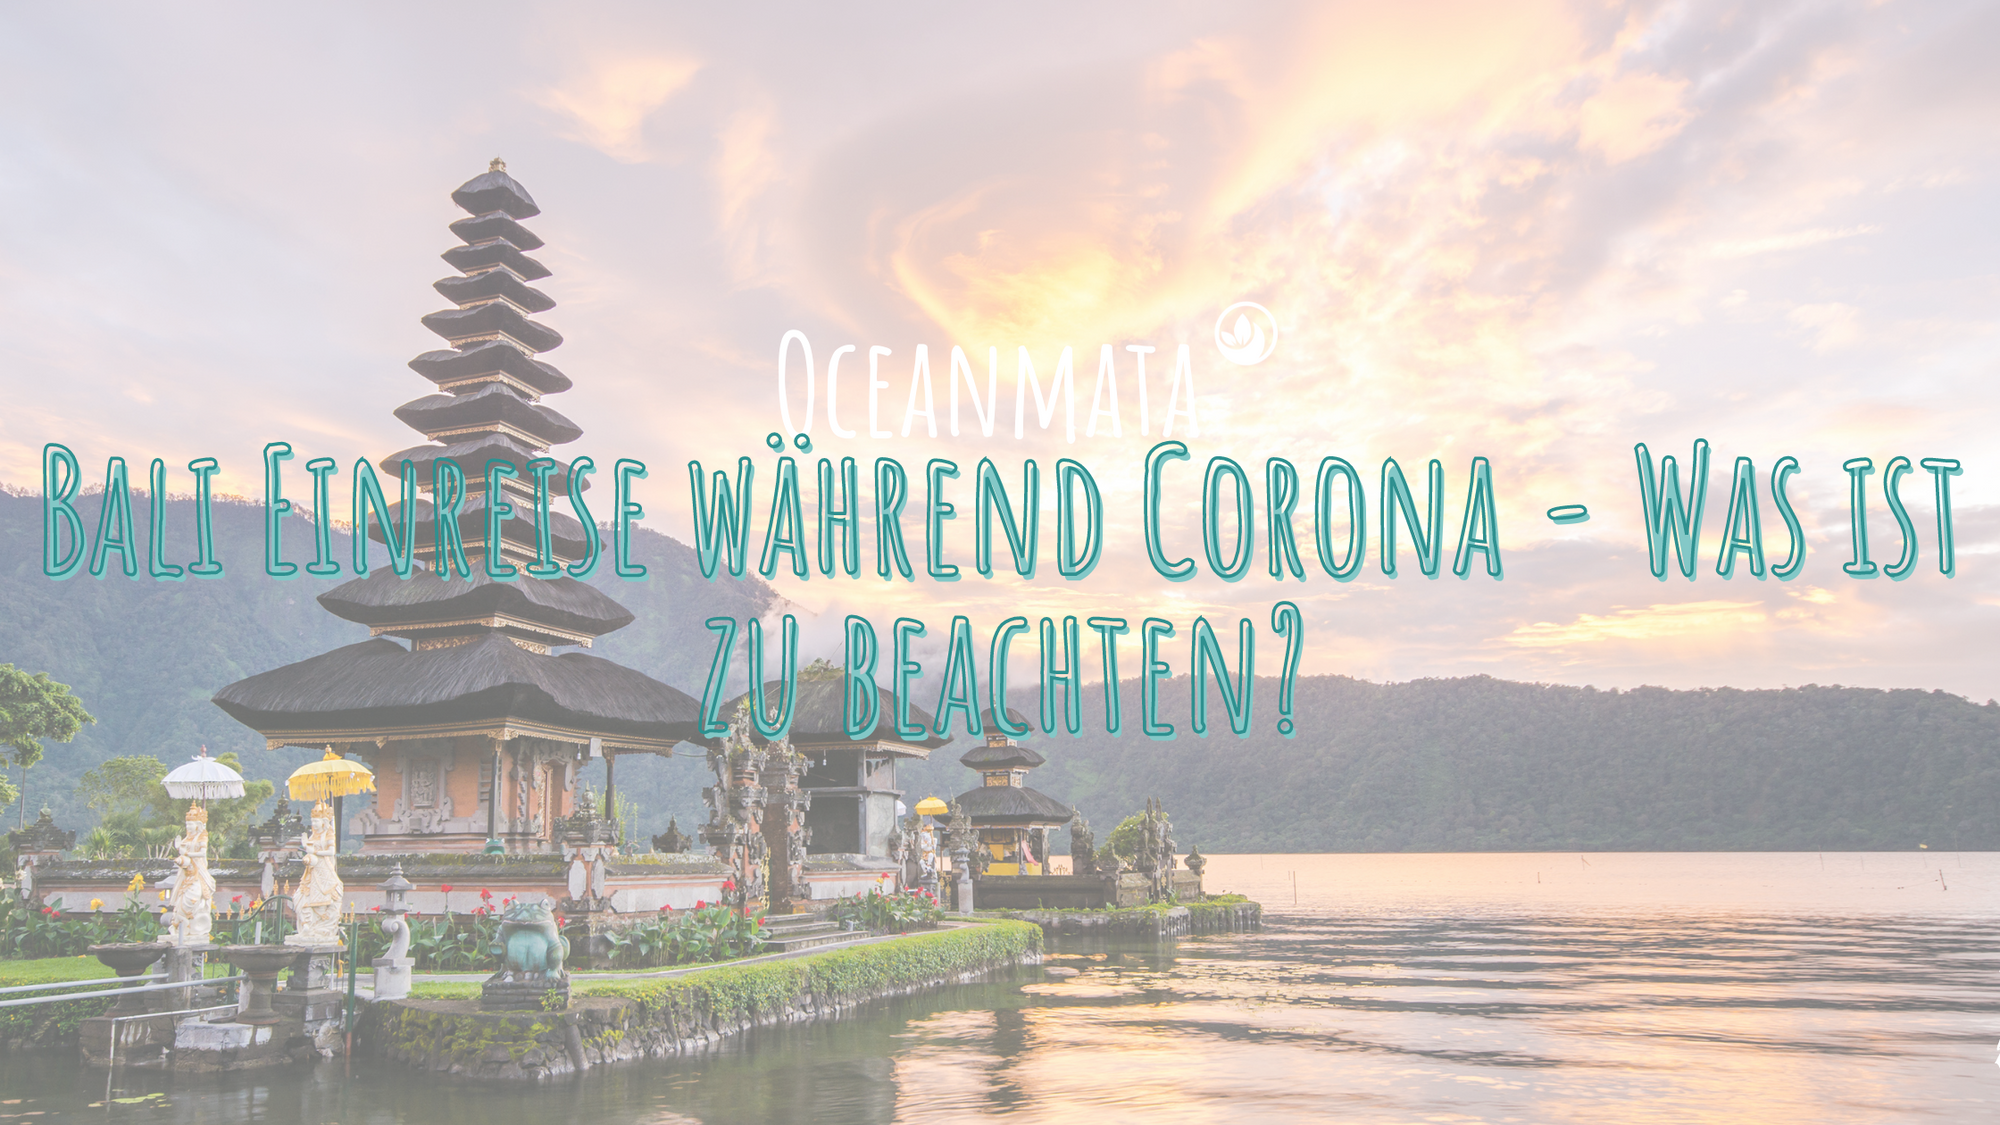 Bali Einreise während Corona - Was ist zu beachten?